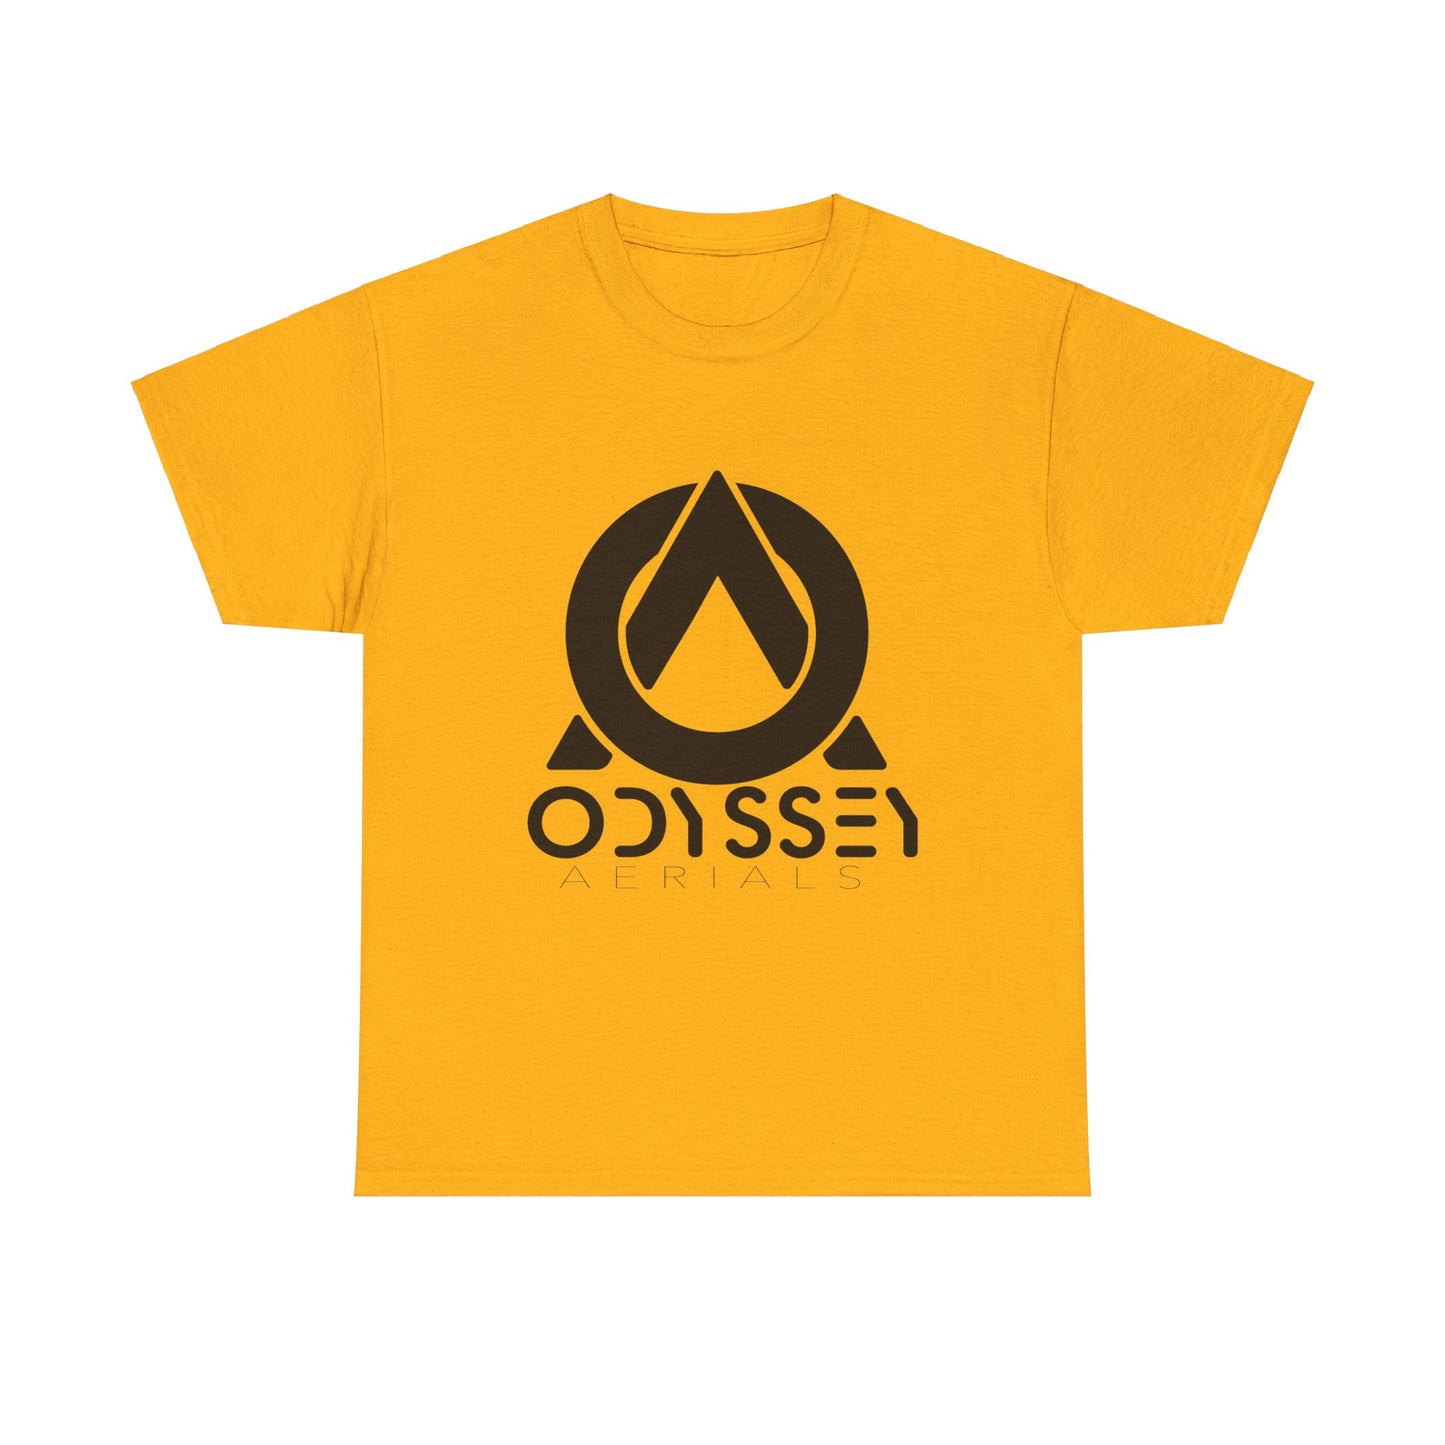 Odyssey Aerials T-Shirt Dark Logo